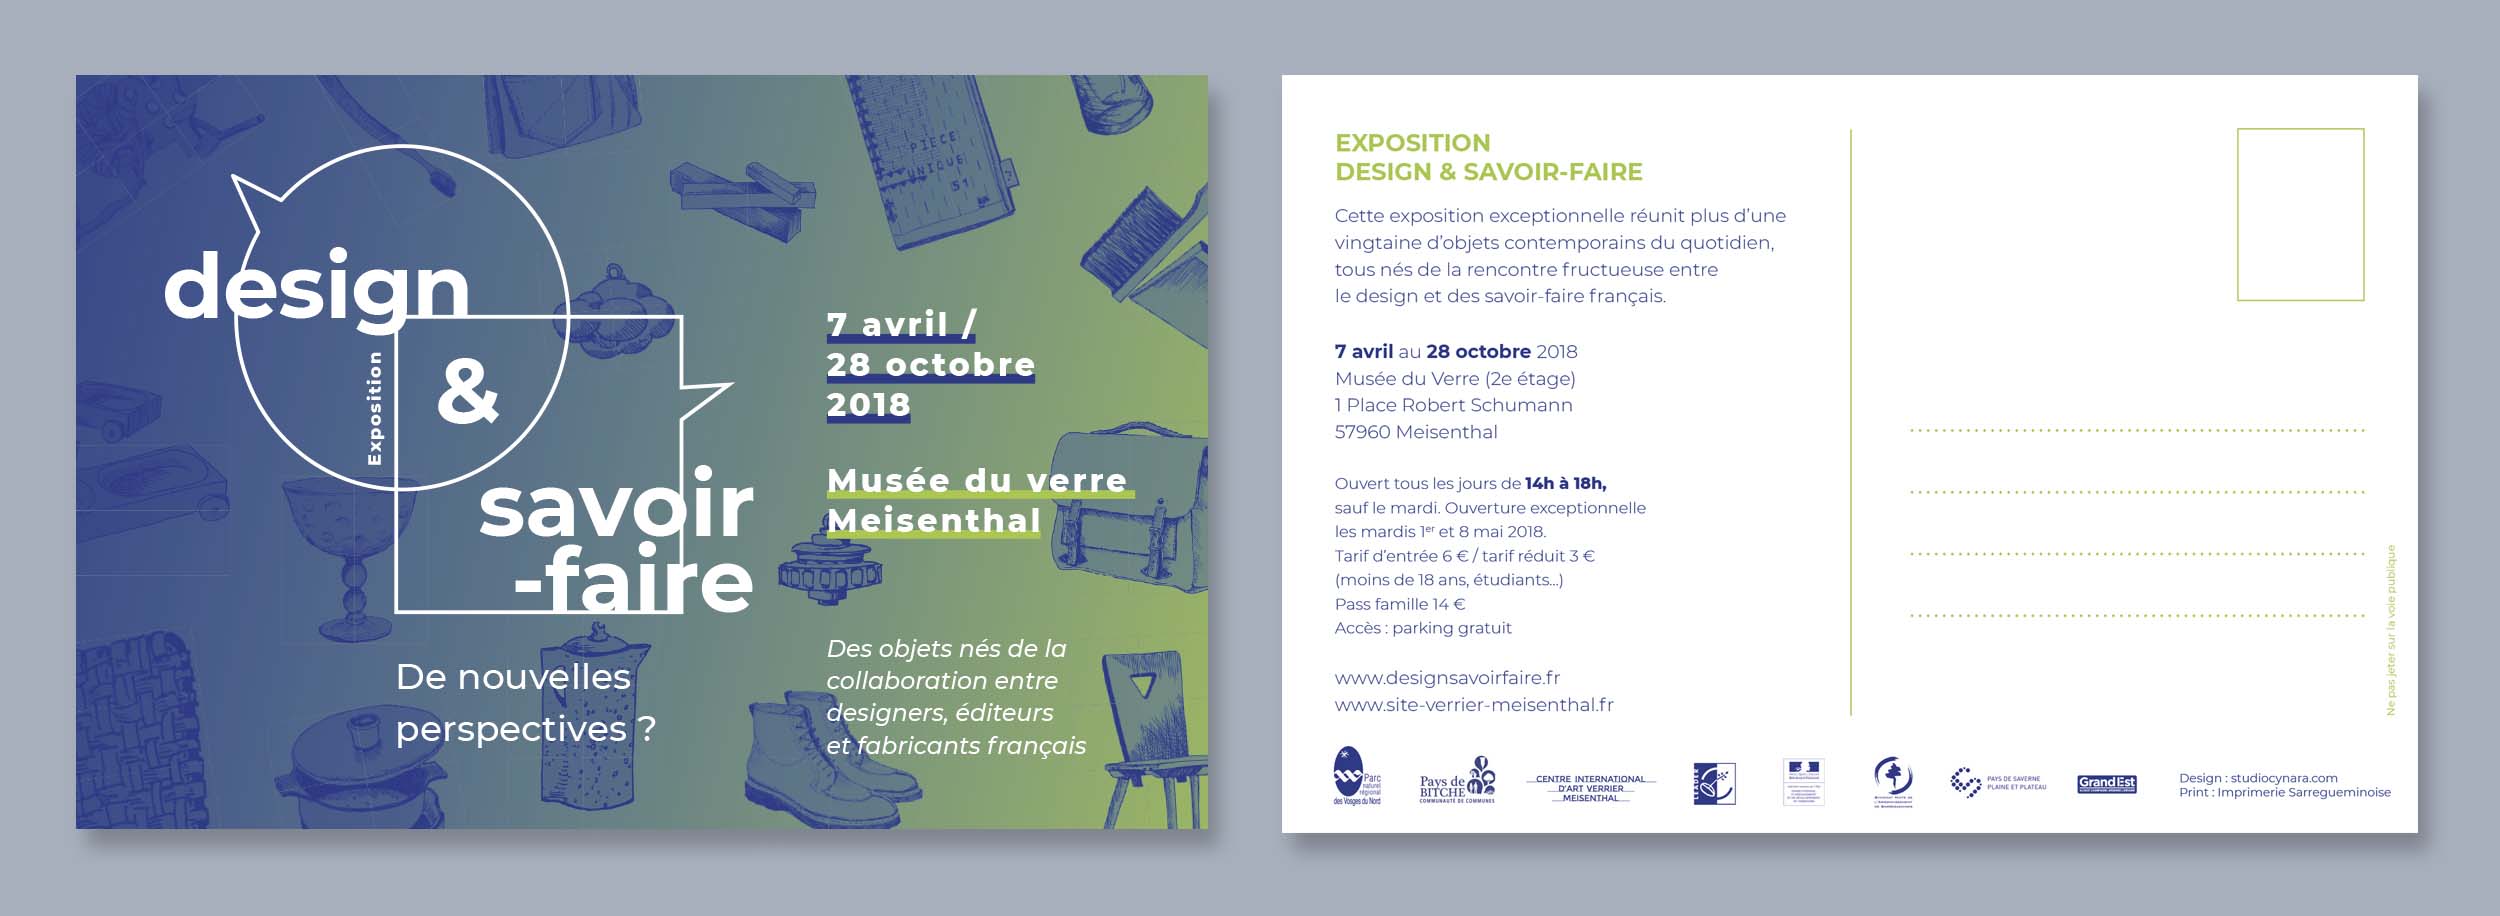 Aperçu de la carte postale de communication, recto et verso, de l'exposition Design et savoir-faire, au Musée du Verre de Meisenthal.